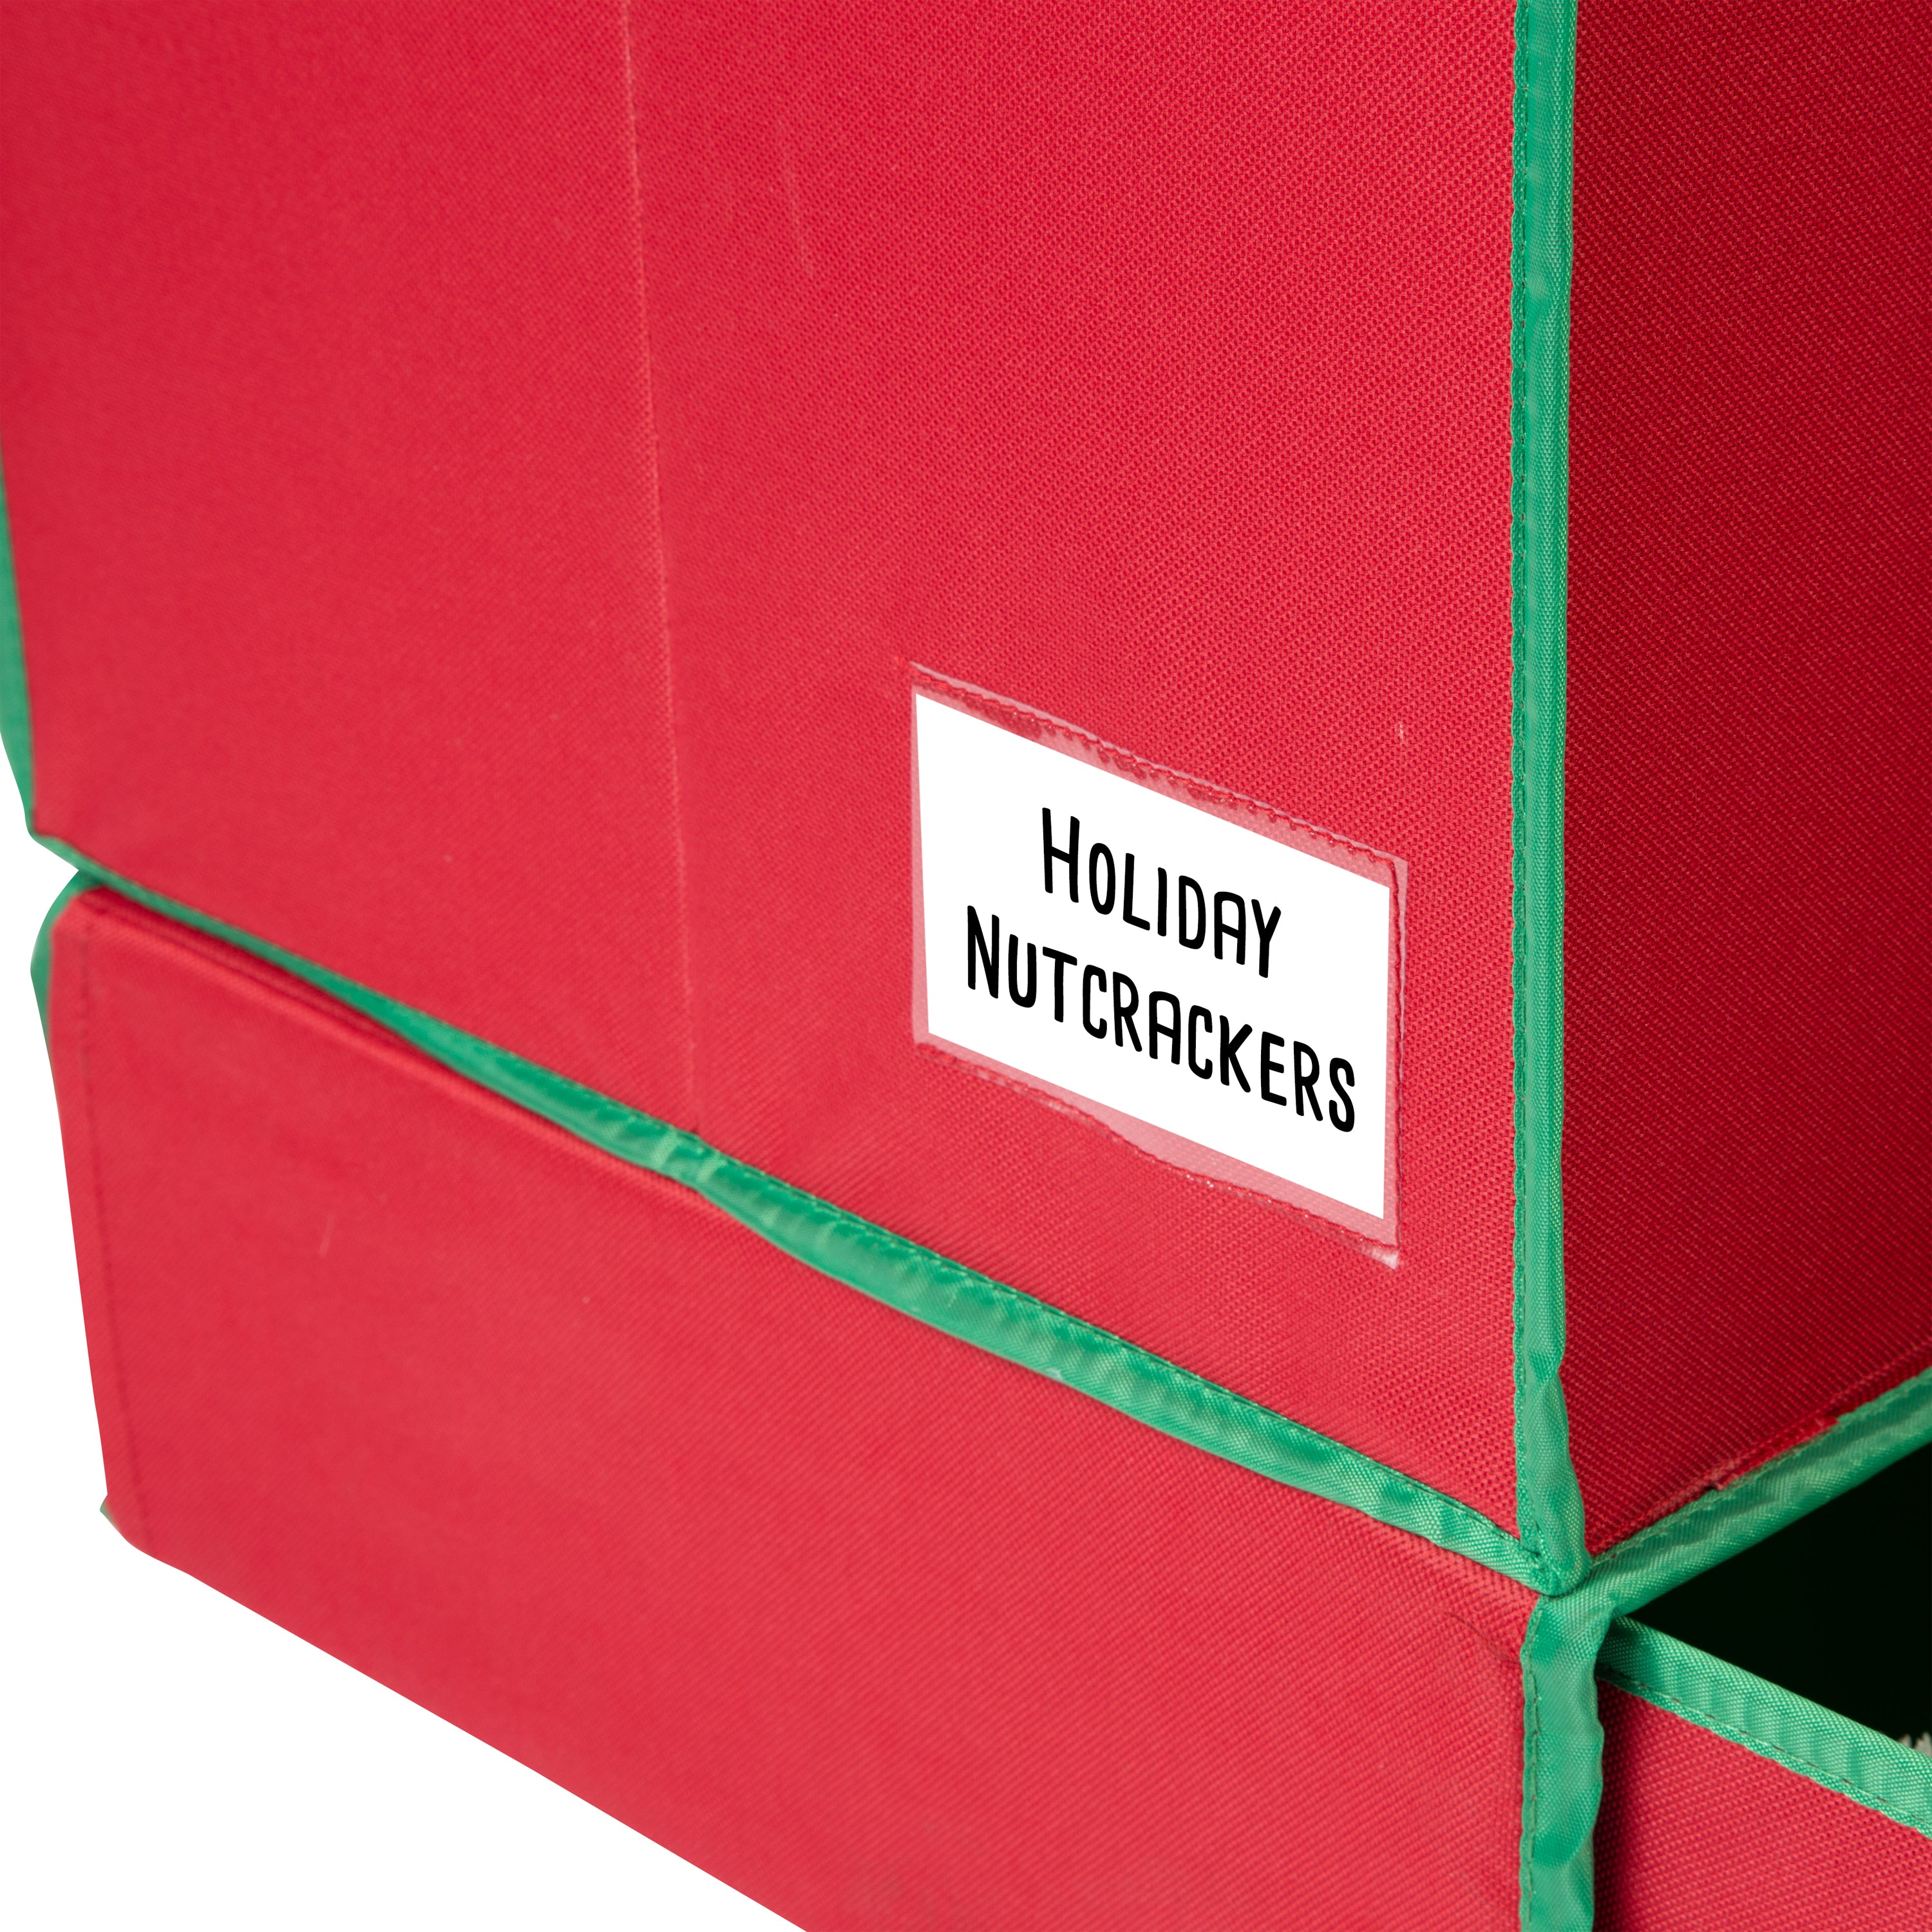 Honey Can Do Christmas Ornament Storage & Reviews